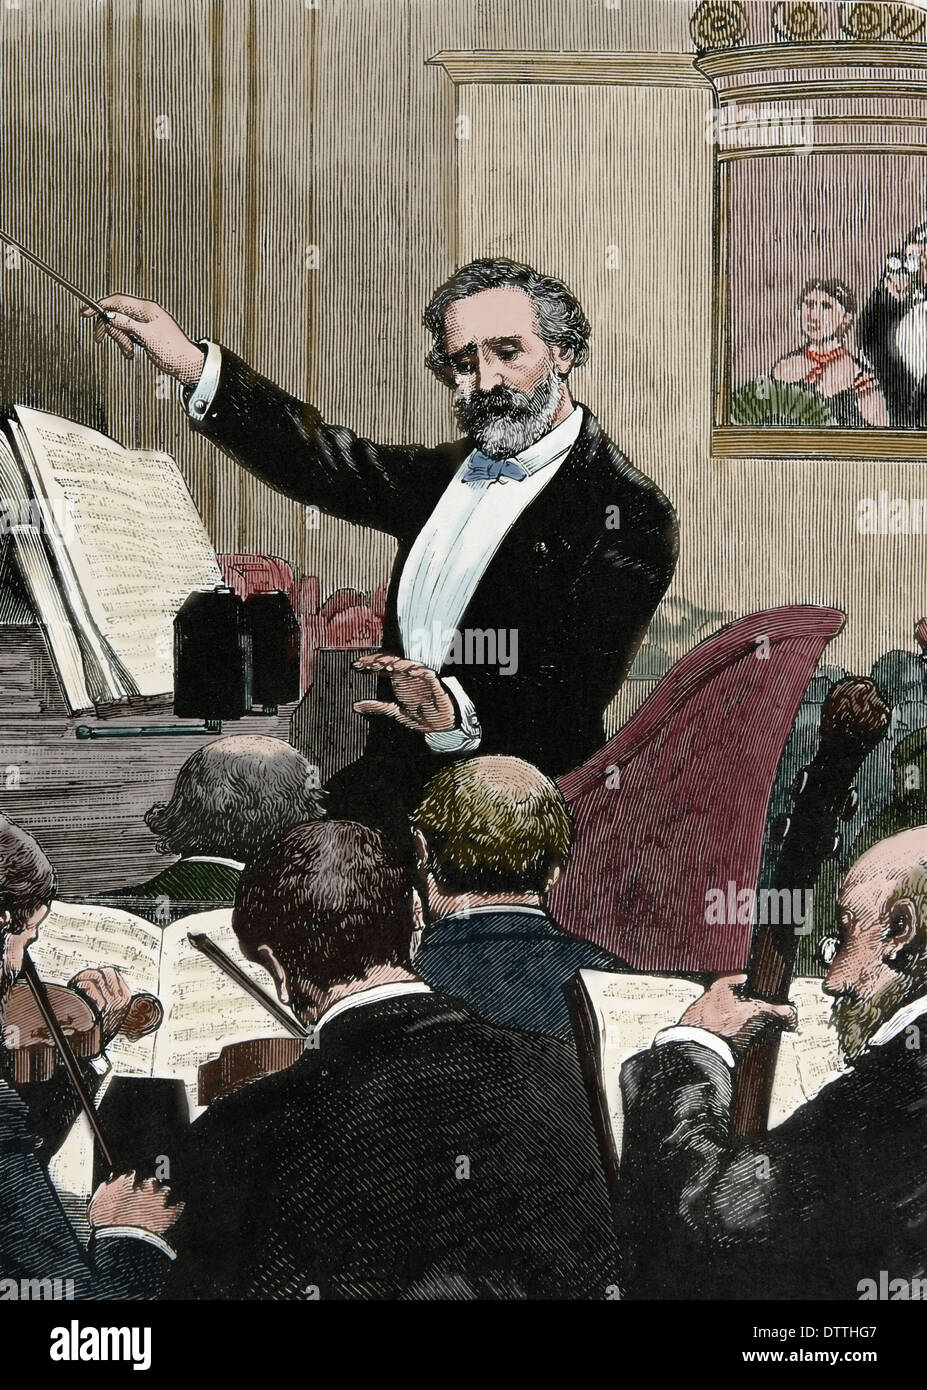 Giuseppe Verdi (1813-1901). Compositor romántico italiano. "Francia, París. Verdi realizando uno de sus propias óperas'.Color grabado Foto de stock